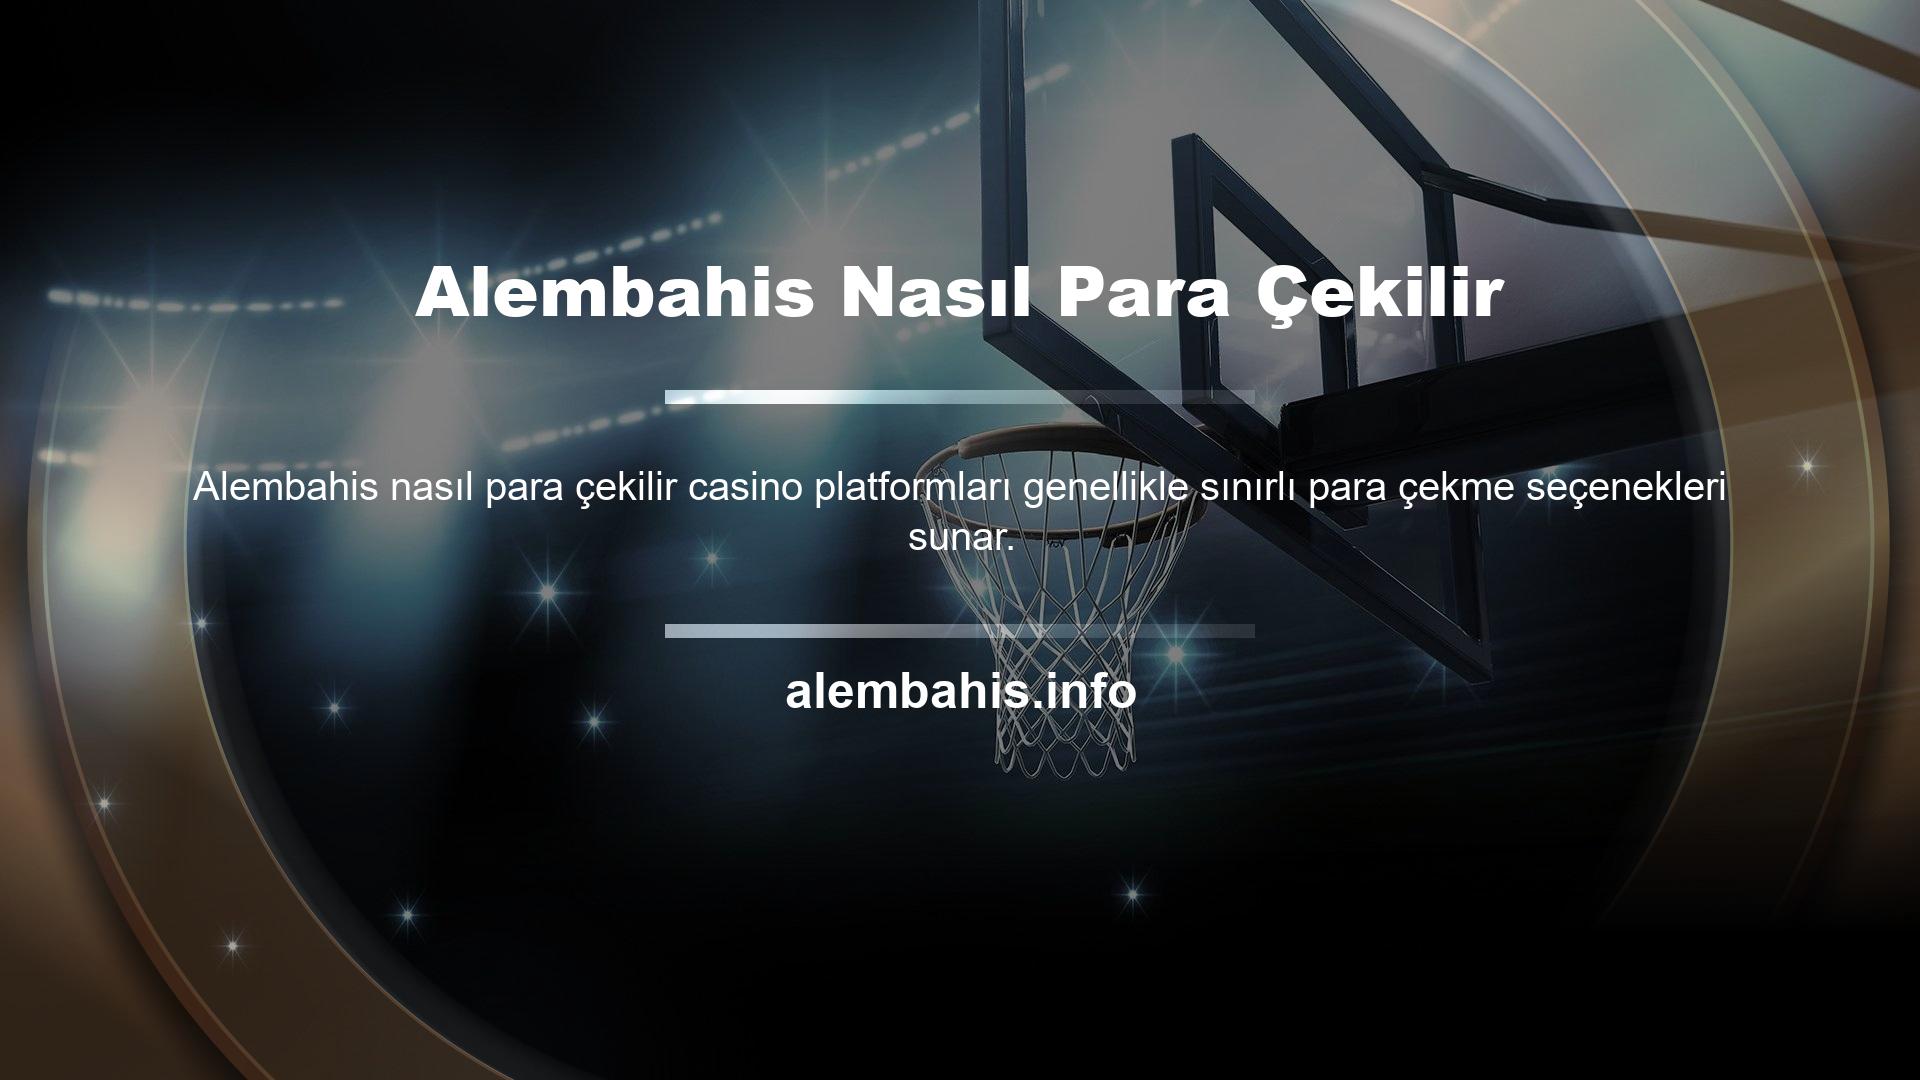 Ancak Alembahis canlı bahis platformu kullanıcılara birçok seçenek sunmaktadır